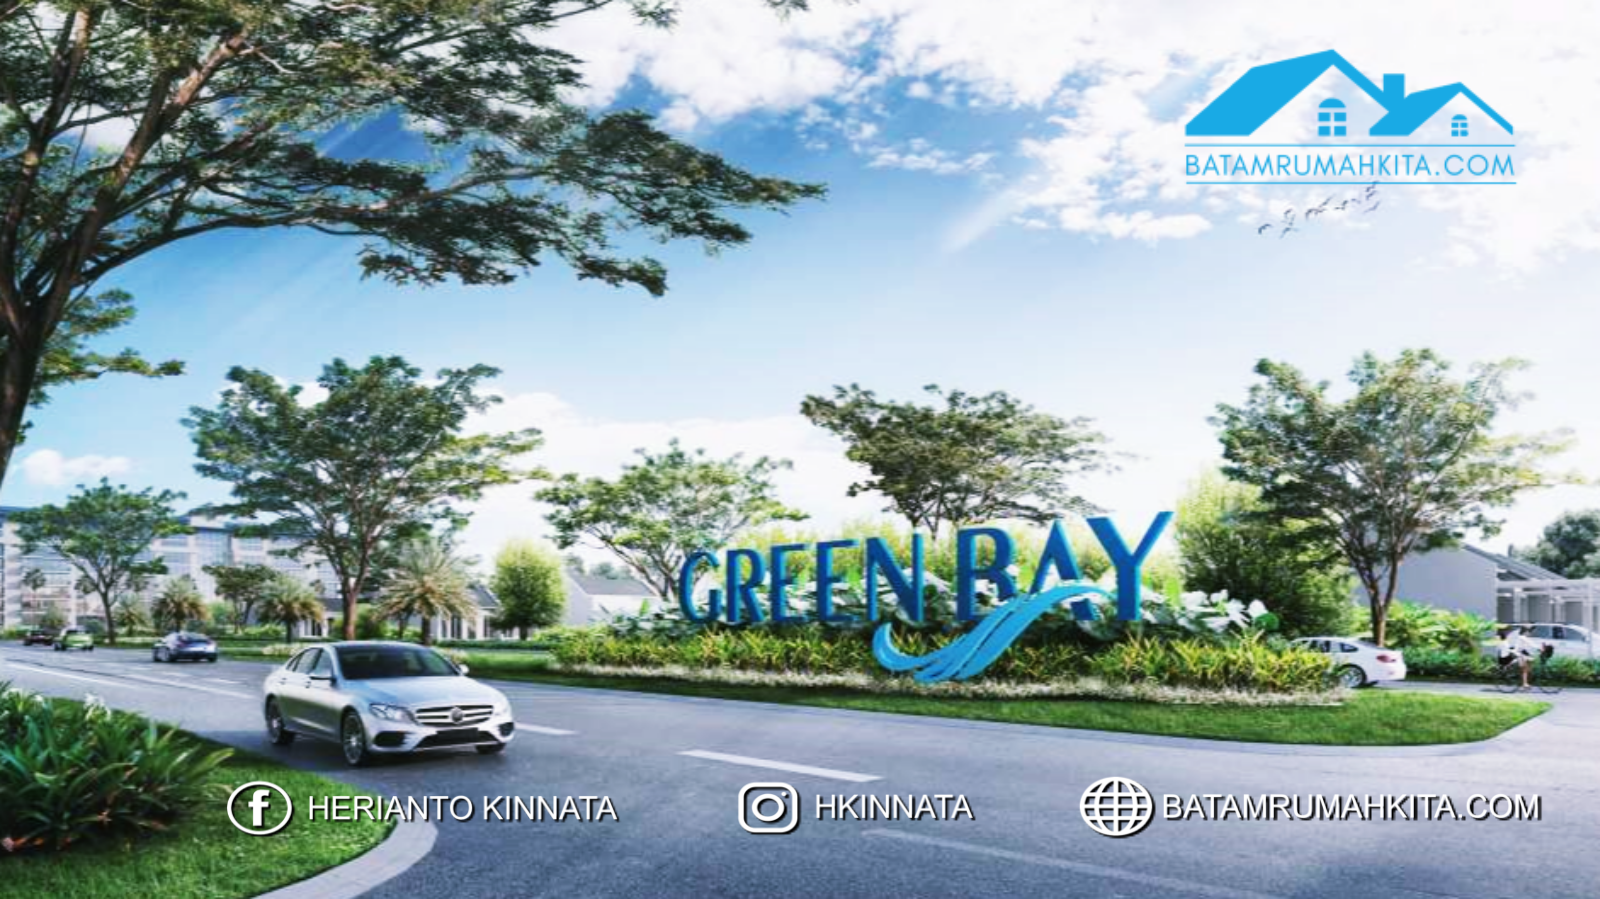 Perumahan baru Green Bay Tiban Batam